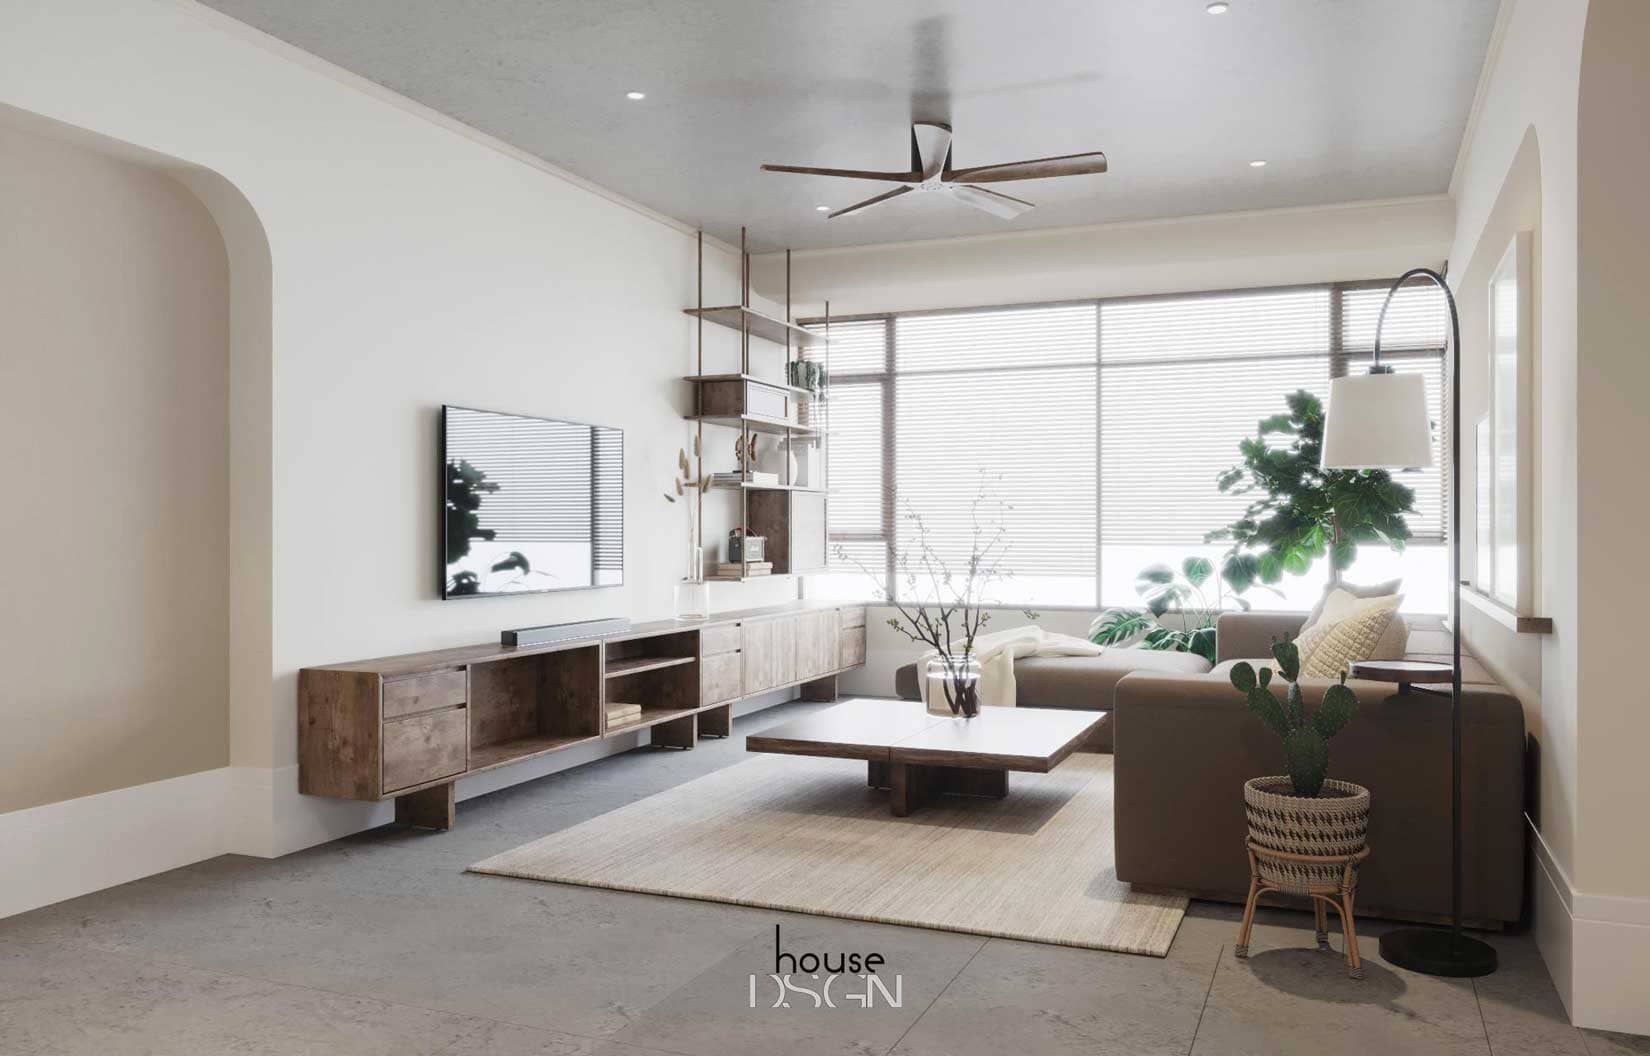 nội thất phòng khách hiện đại tiện lợi - Housedesign